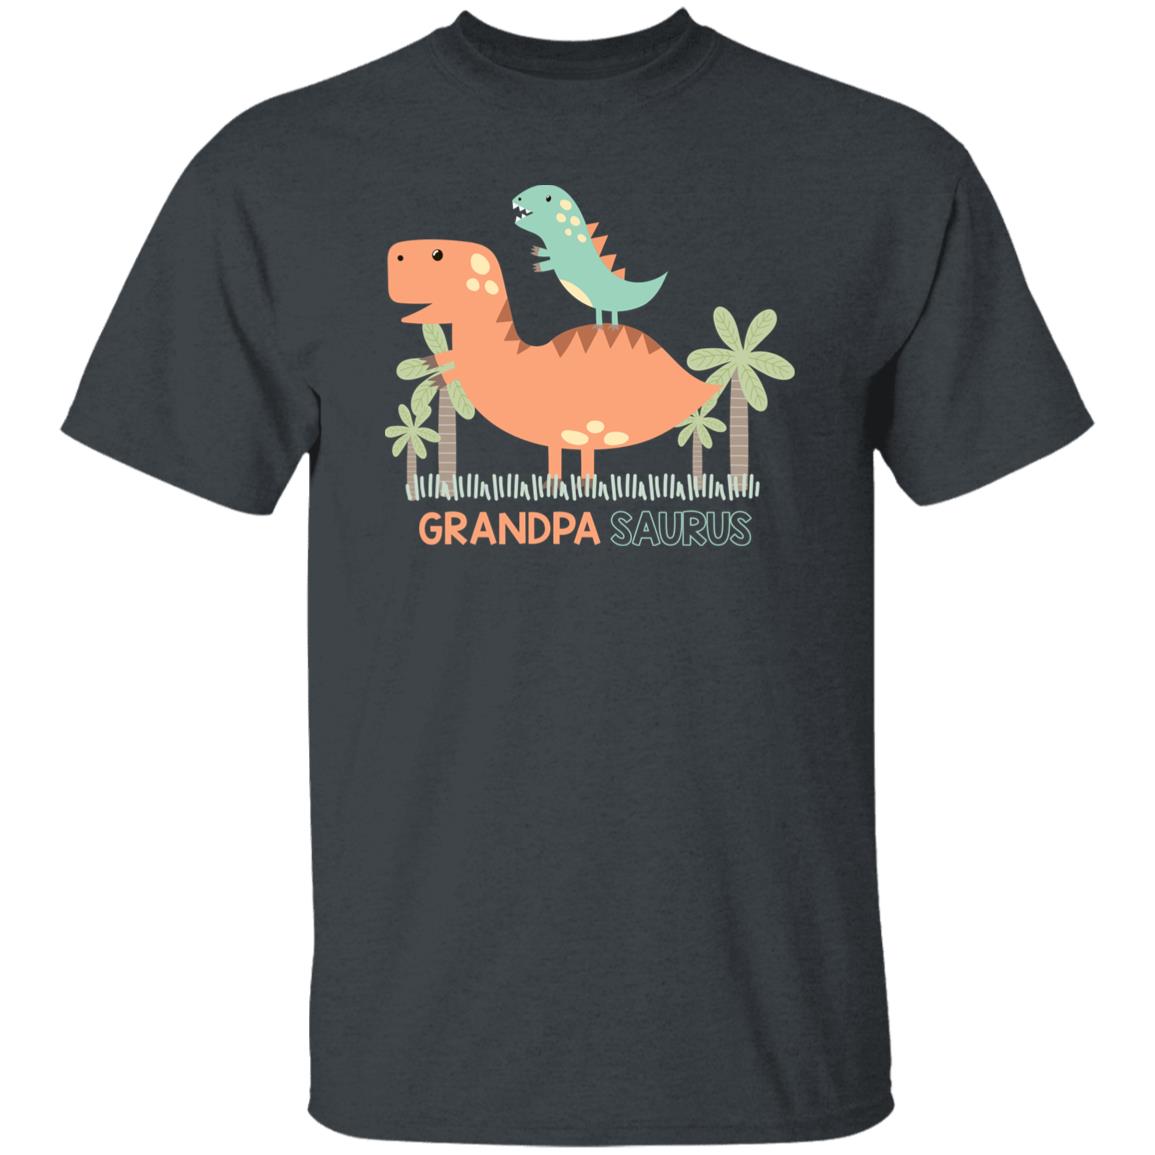 Grandpa Saurus Unisex T-shirt gift grandfather dinosaur tee black dark heather-Dark Heather-Family-Gift-Planet